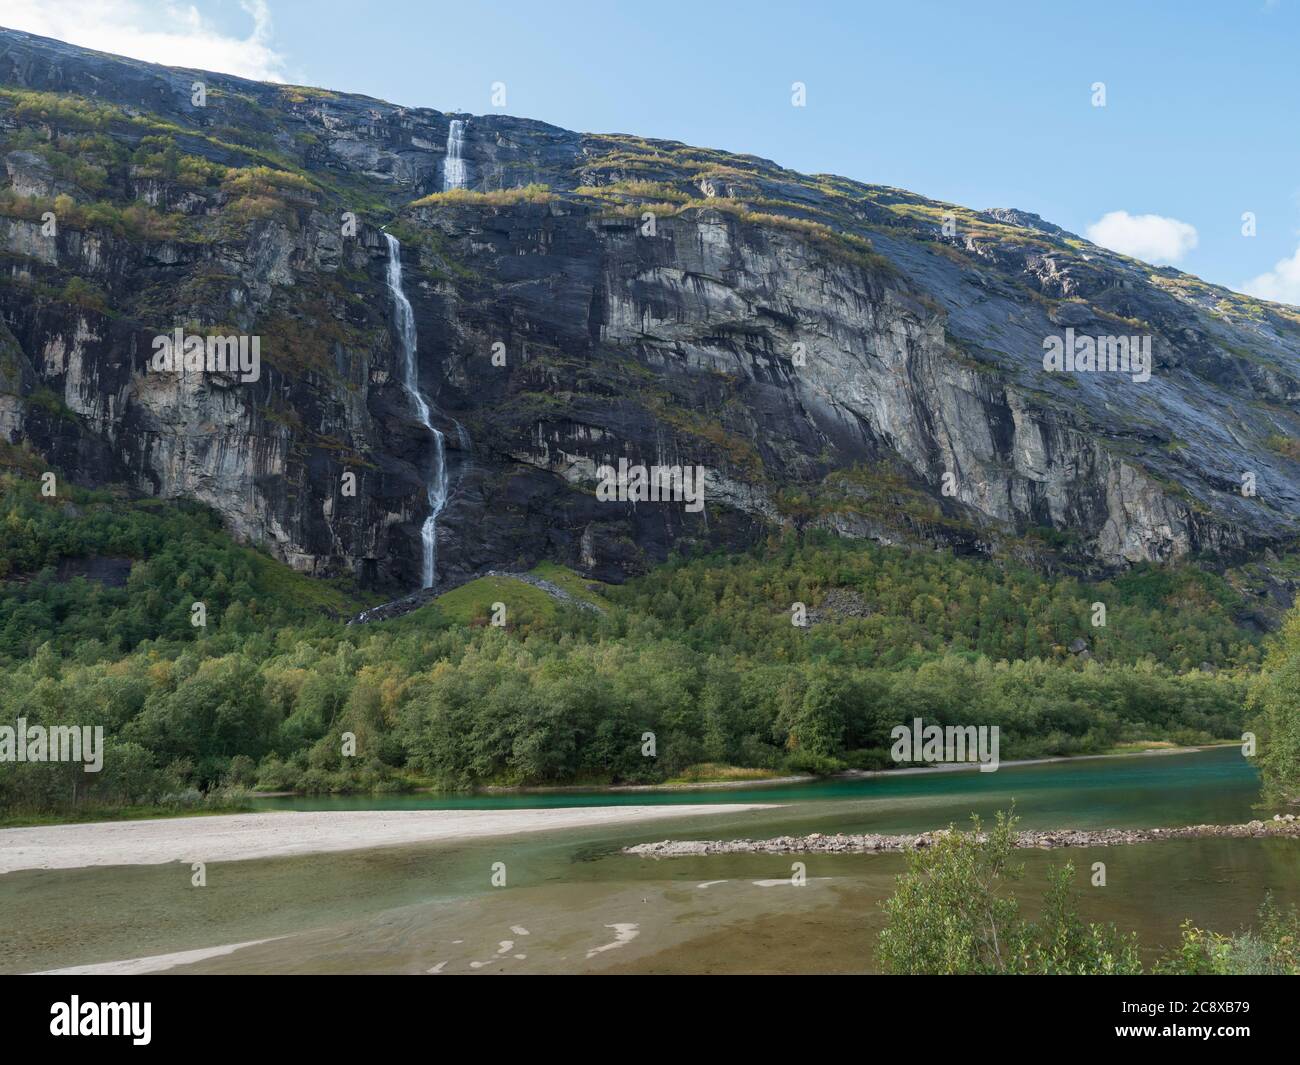 Grande cascade avec rivière turquoise Rauma dans la vallée de Romsdalen avec des rochers et une forêt verte. Bleu ciel blanc nuages arrière-plan. Paysage d'été de Norvège Banque D'Images